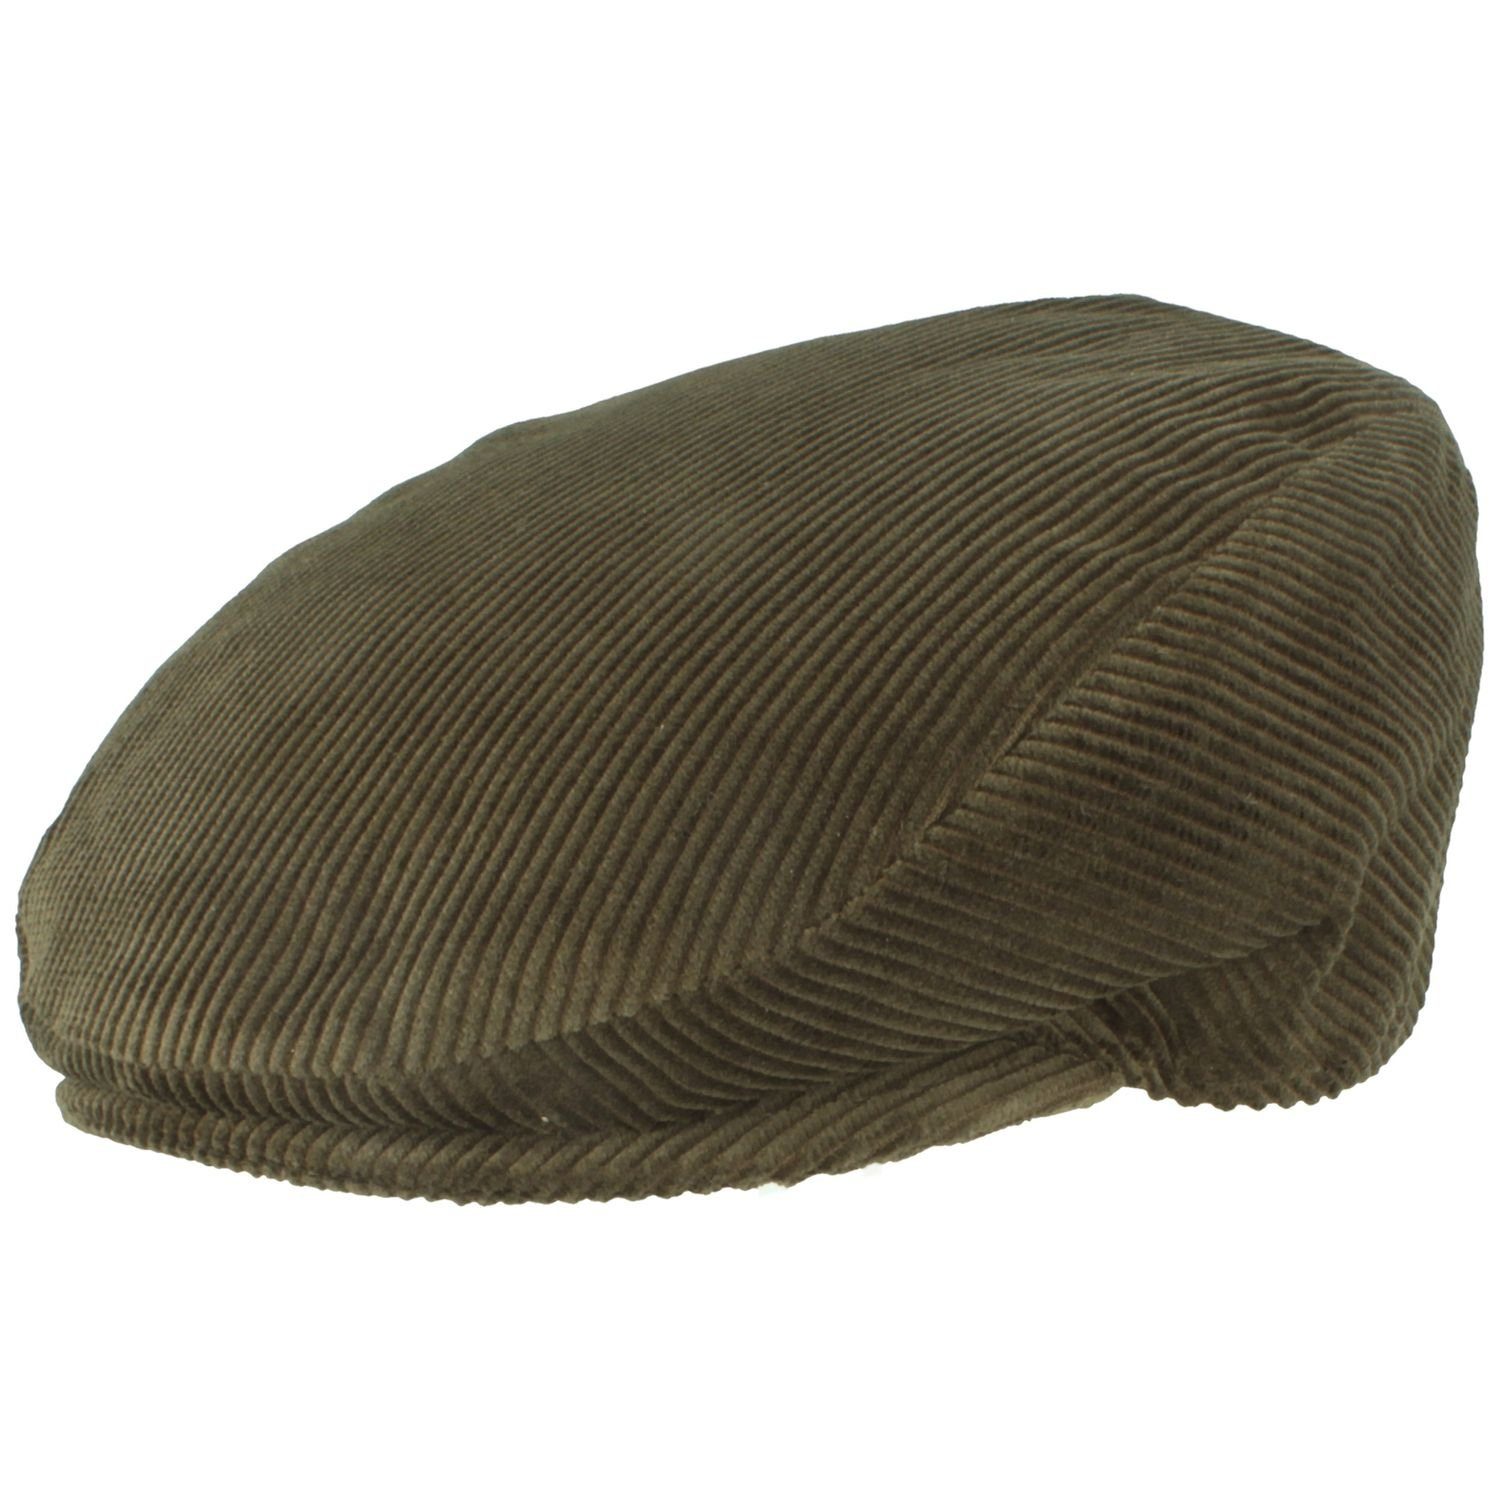 Breiter Schiebermütze Flatcap aus Baumwolle mit Cord-Streifen oliv